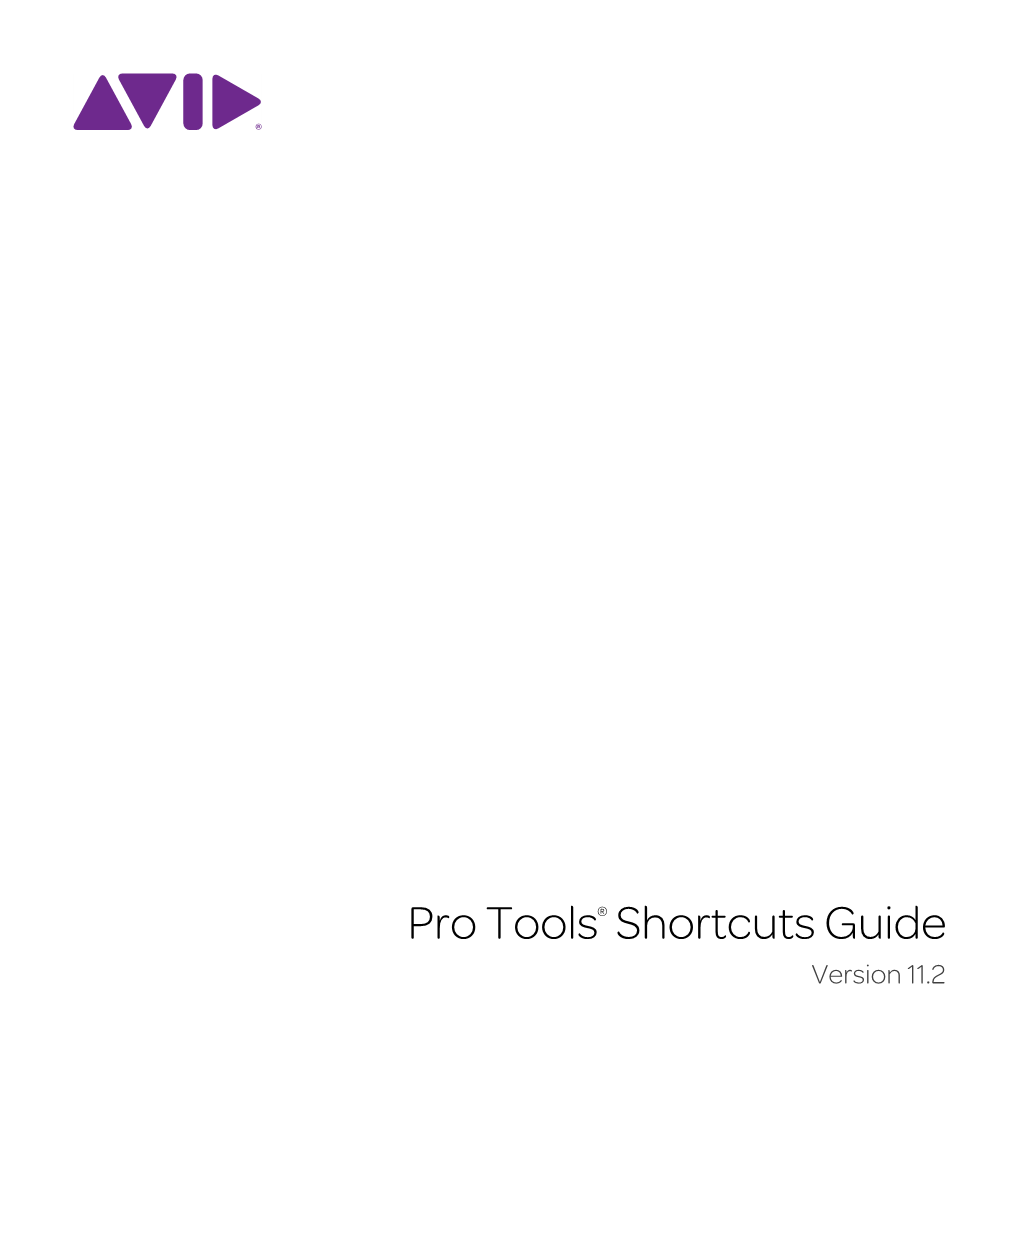 Pro Tools Shortcuts Guide Iii Clip Menu